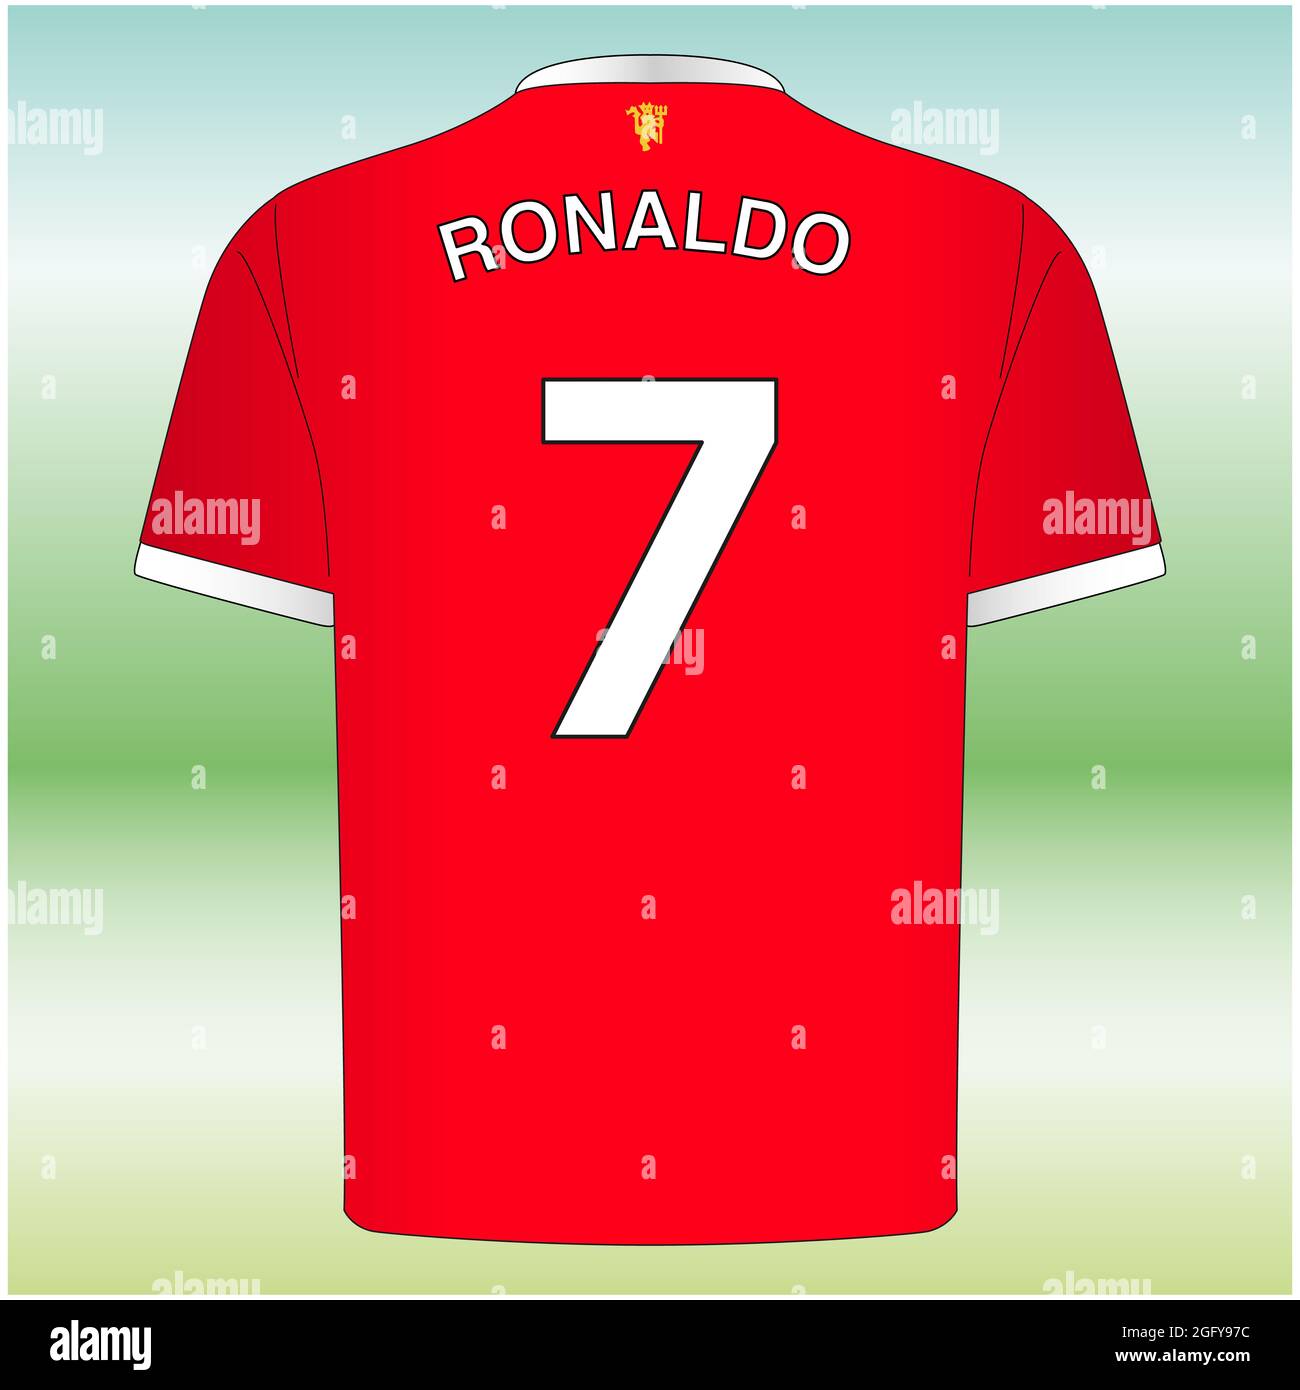 Manchester, Royaume-Uni, août 2021, maillot numéro 7 de Ronaldo, nouveau joueur de manchester united, équipe de football Banque D'Images